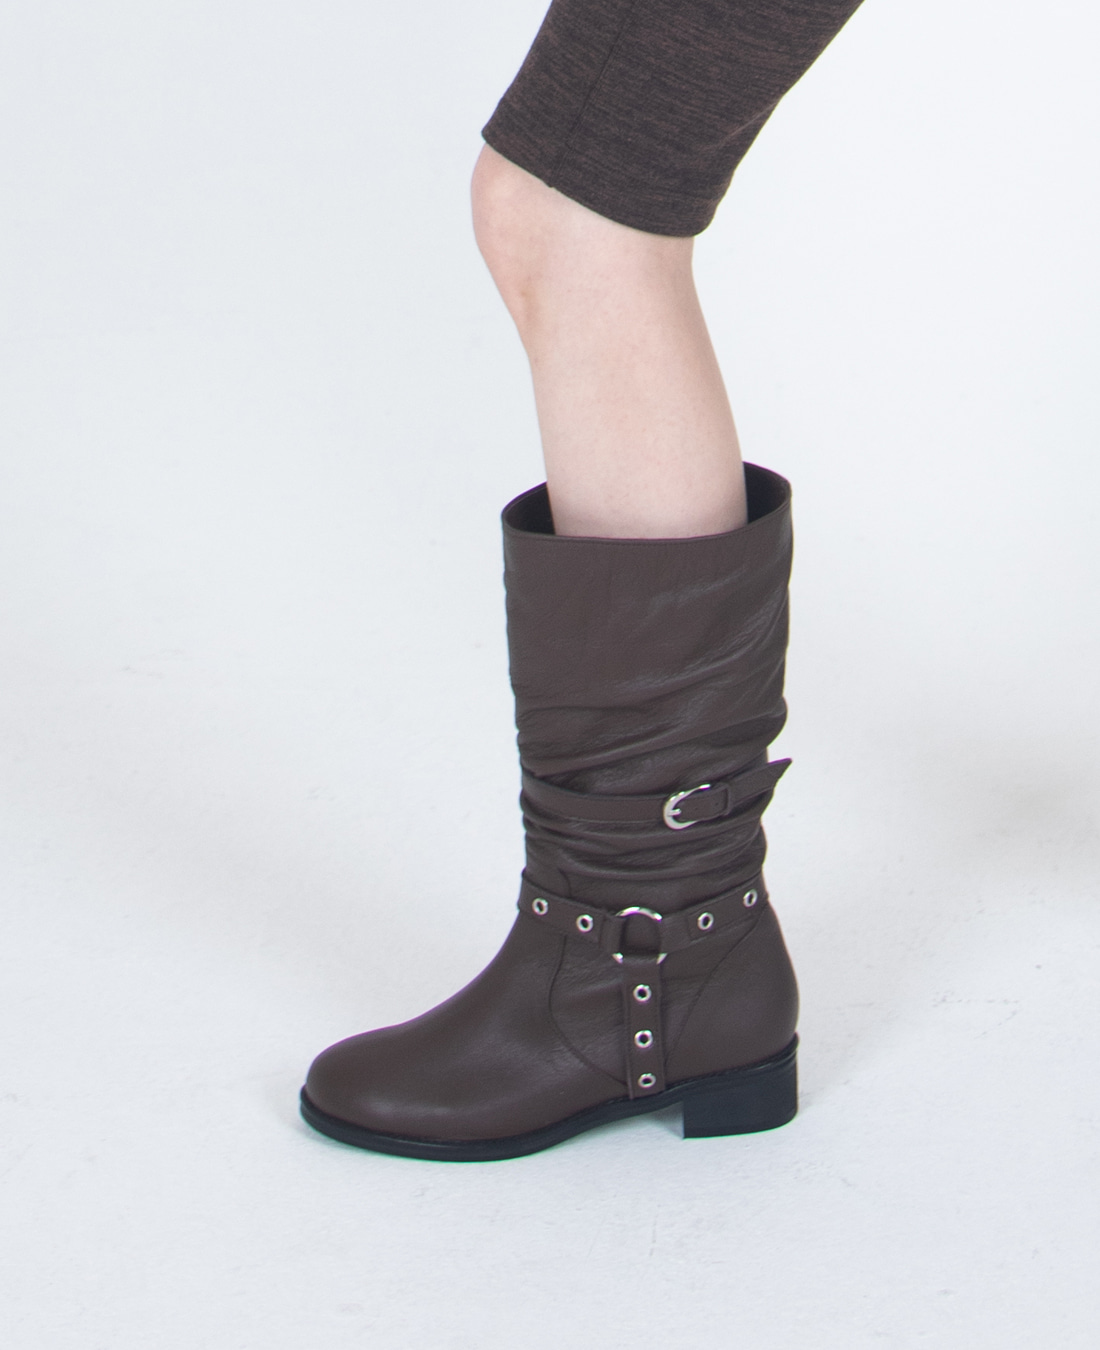 Slouchy Rider Boots (Dark Brown)